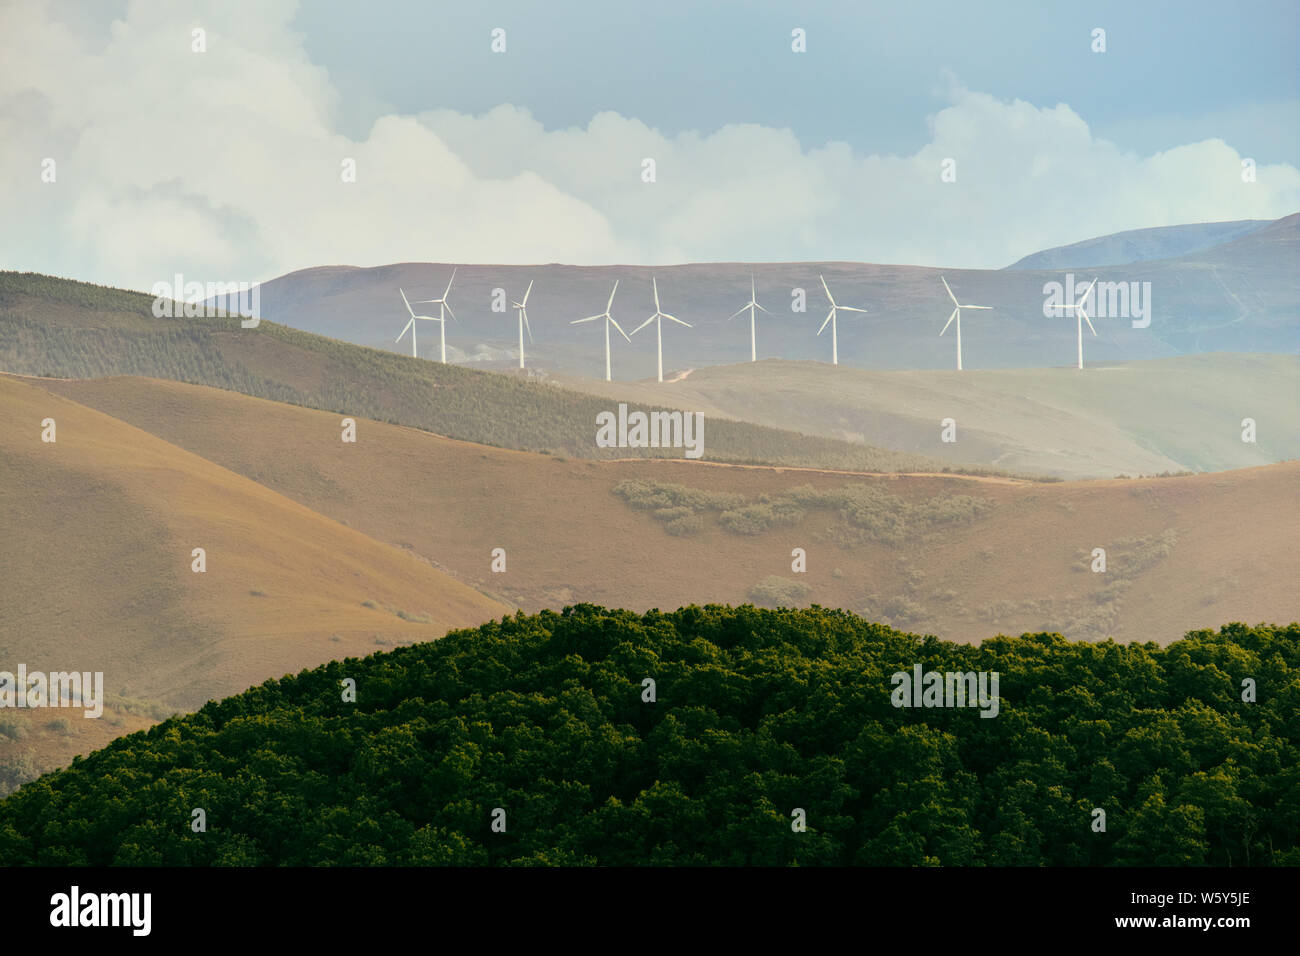 Power Generation Eolic Wind Turbines Field In Spain Stock Photo